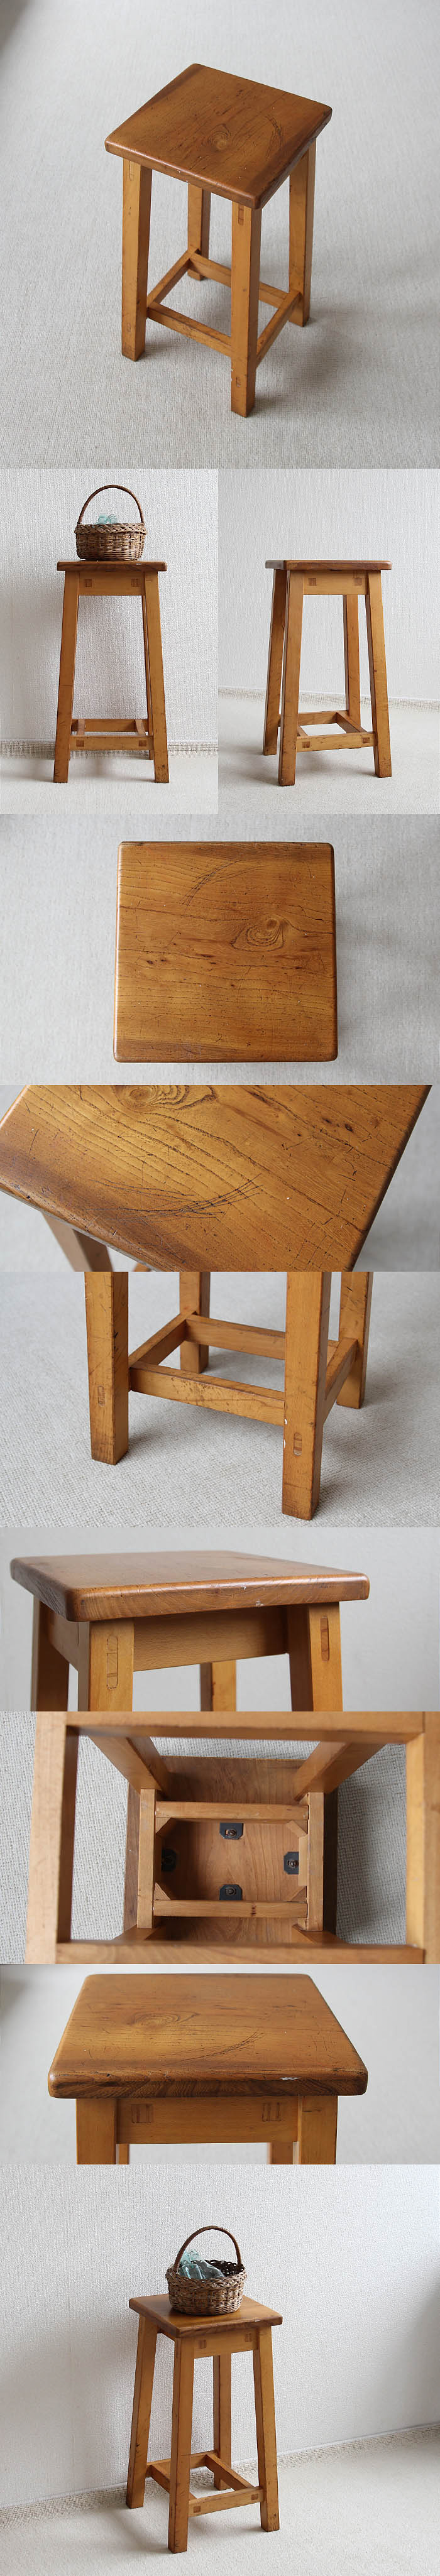 イギリス アンティーク ハイスツール 木製椅子 飾り台 カントリー 無垢材 家具 V-259